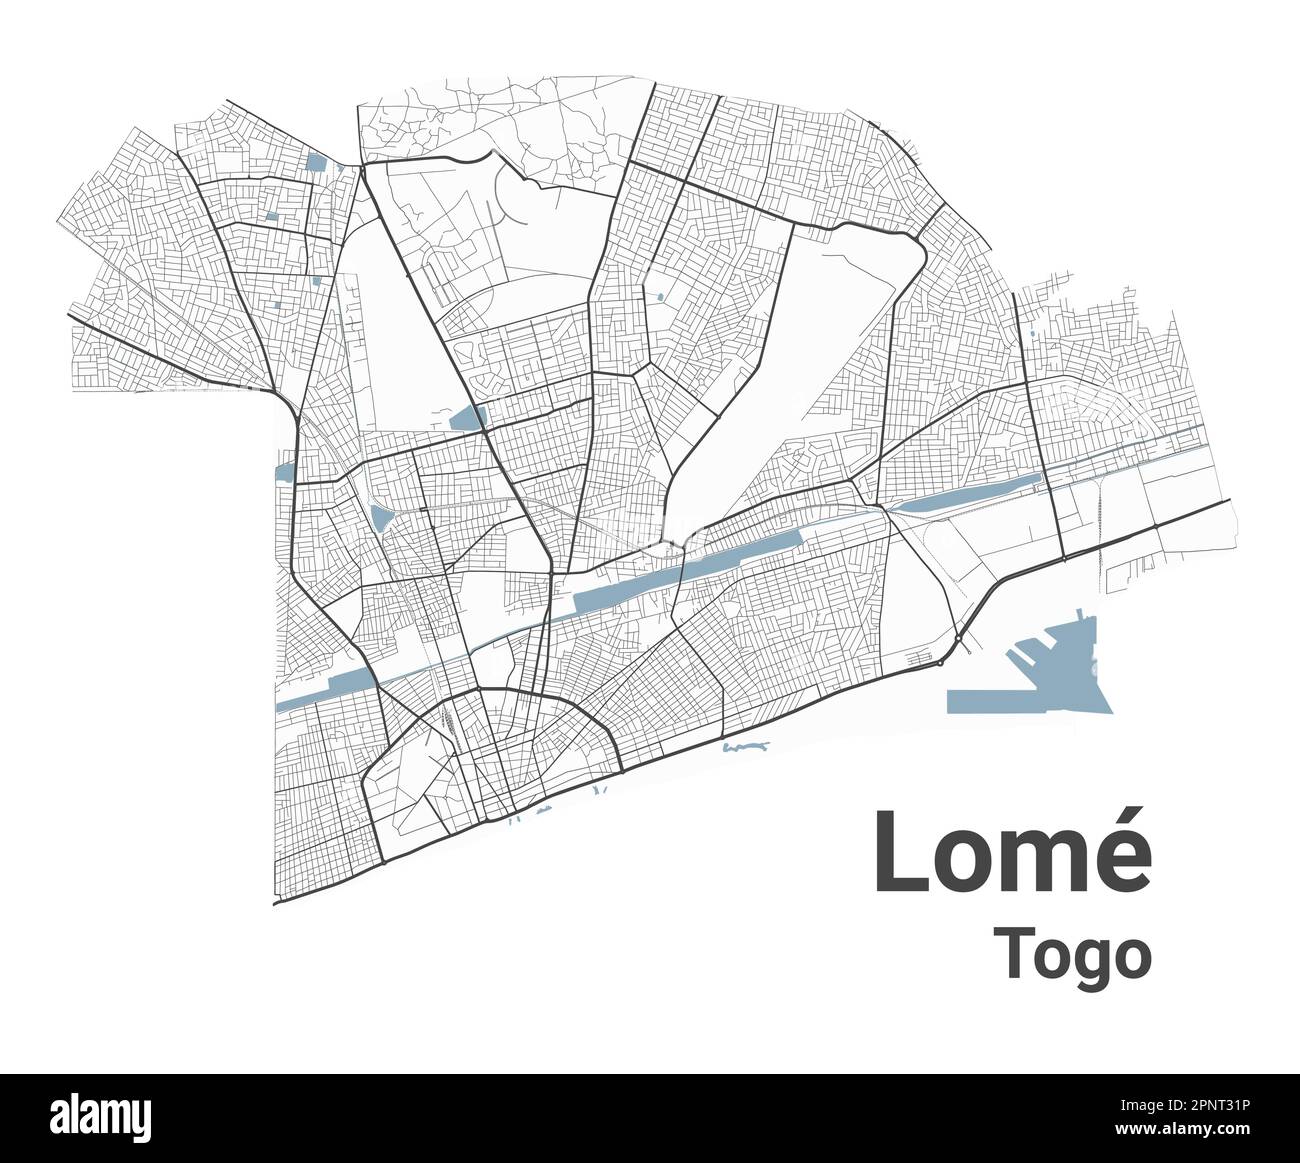 Landkarte von Lome, Hauptstadt von Togo. Stadtplan mit Flüssen und Straßen, Parks und Eisenbahnen. Vektordarstellung. Stock Vektor